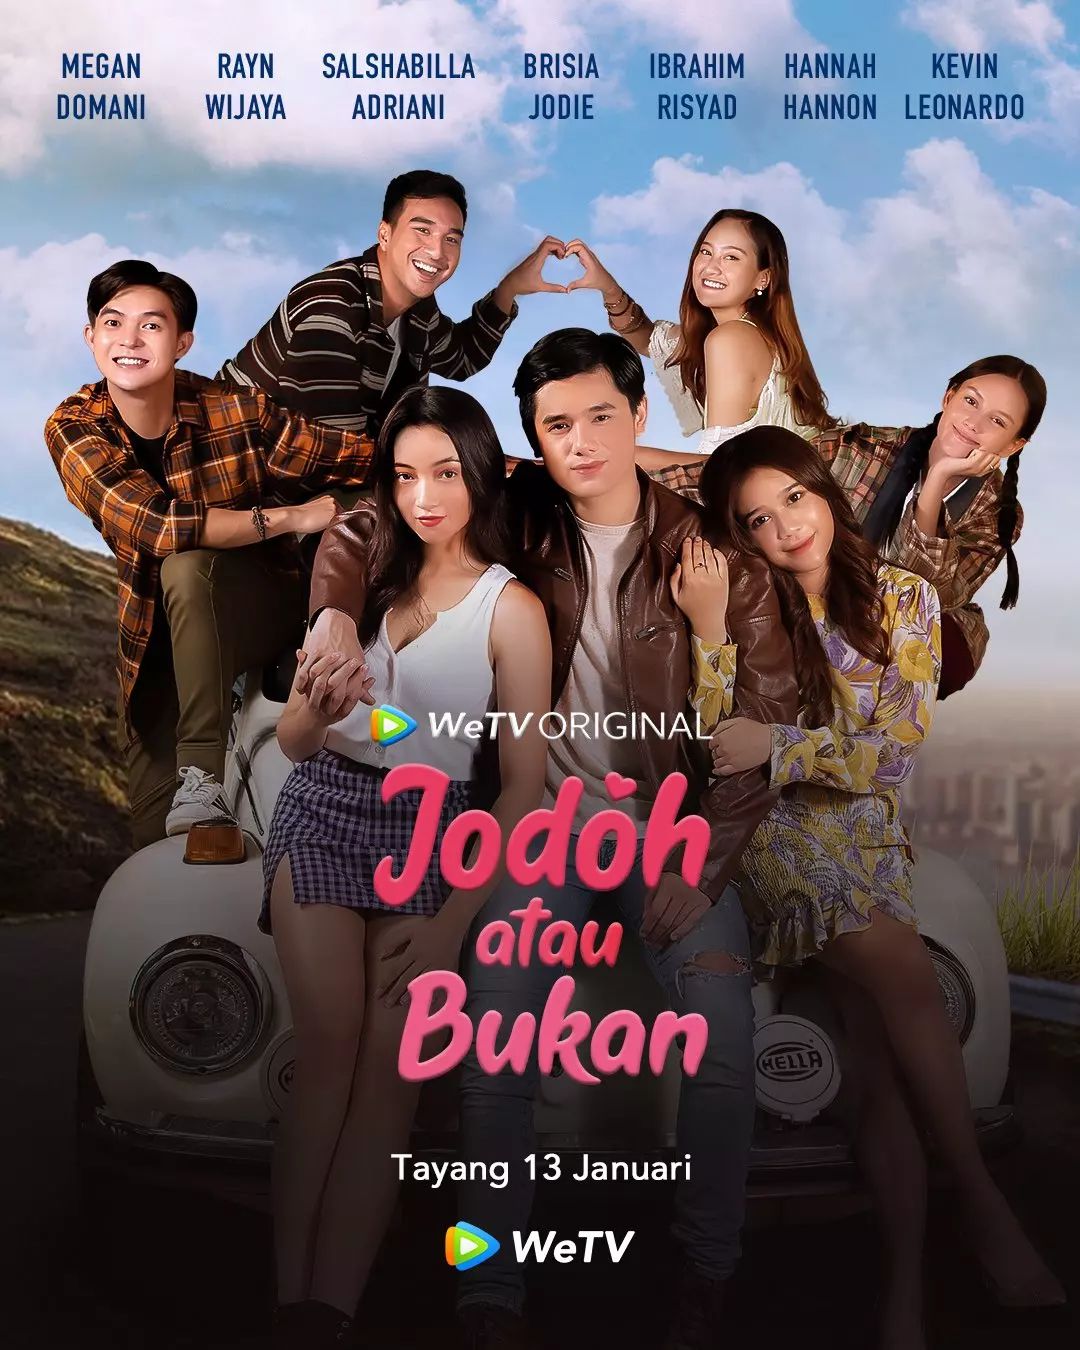 TV ratings for Jodoh Atau Bukan in the United Kingdom. wetv TV series